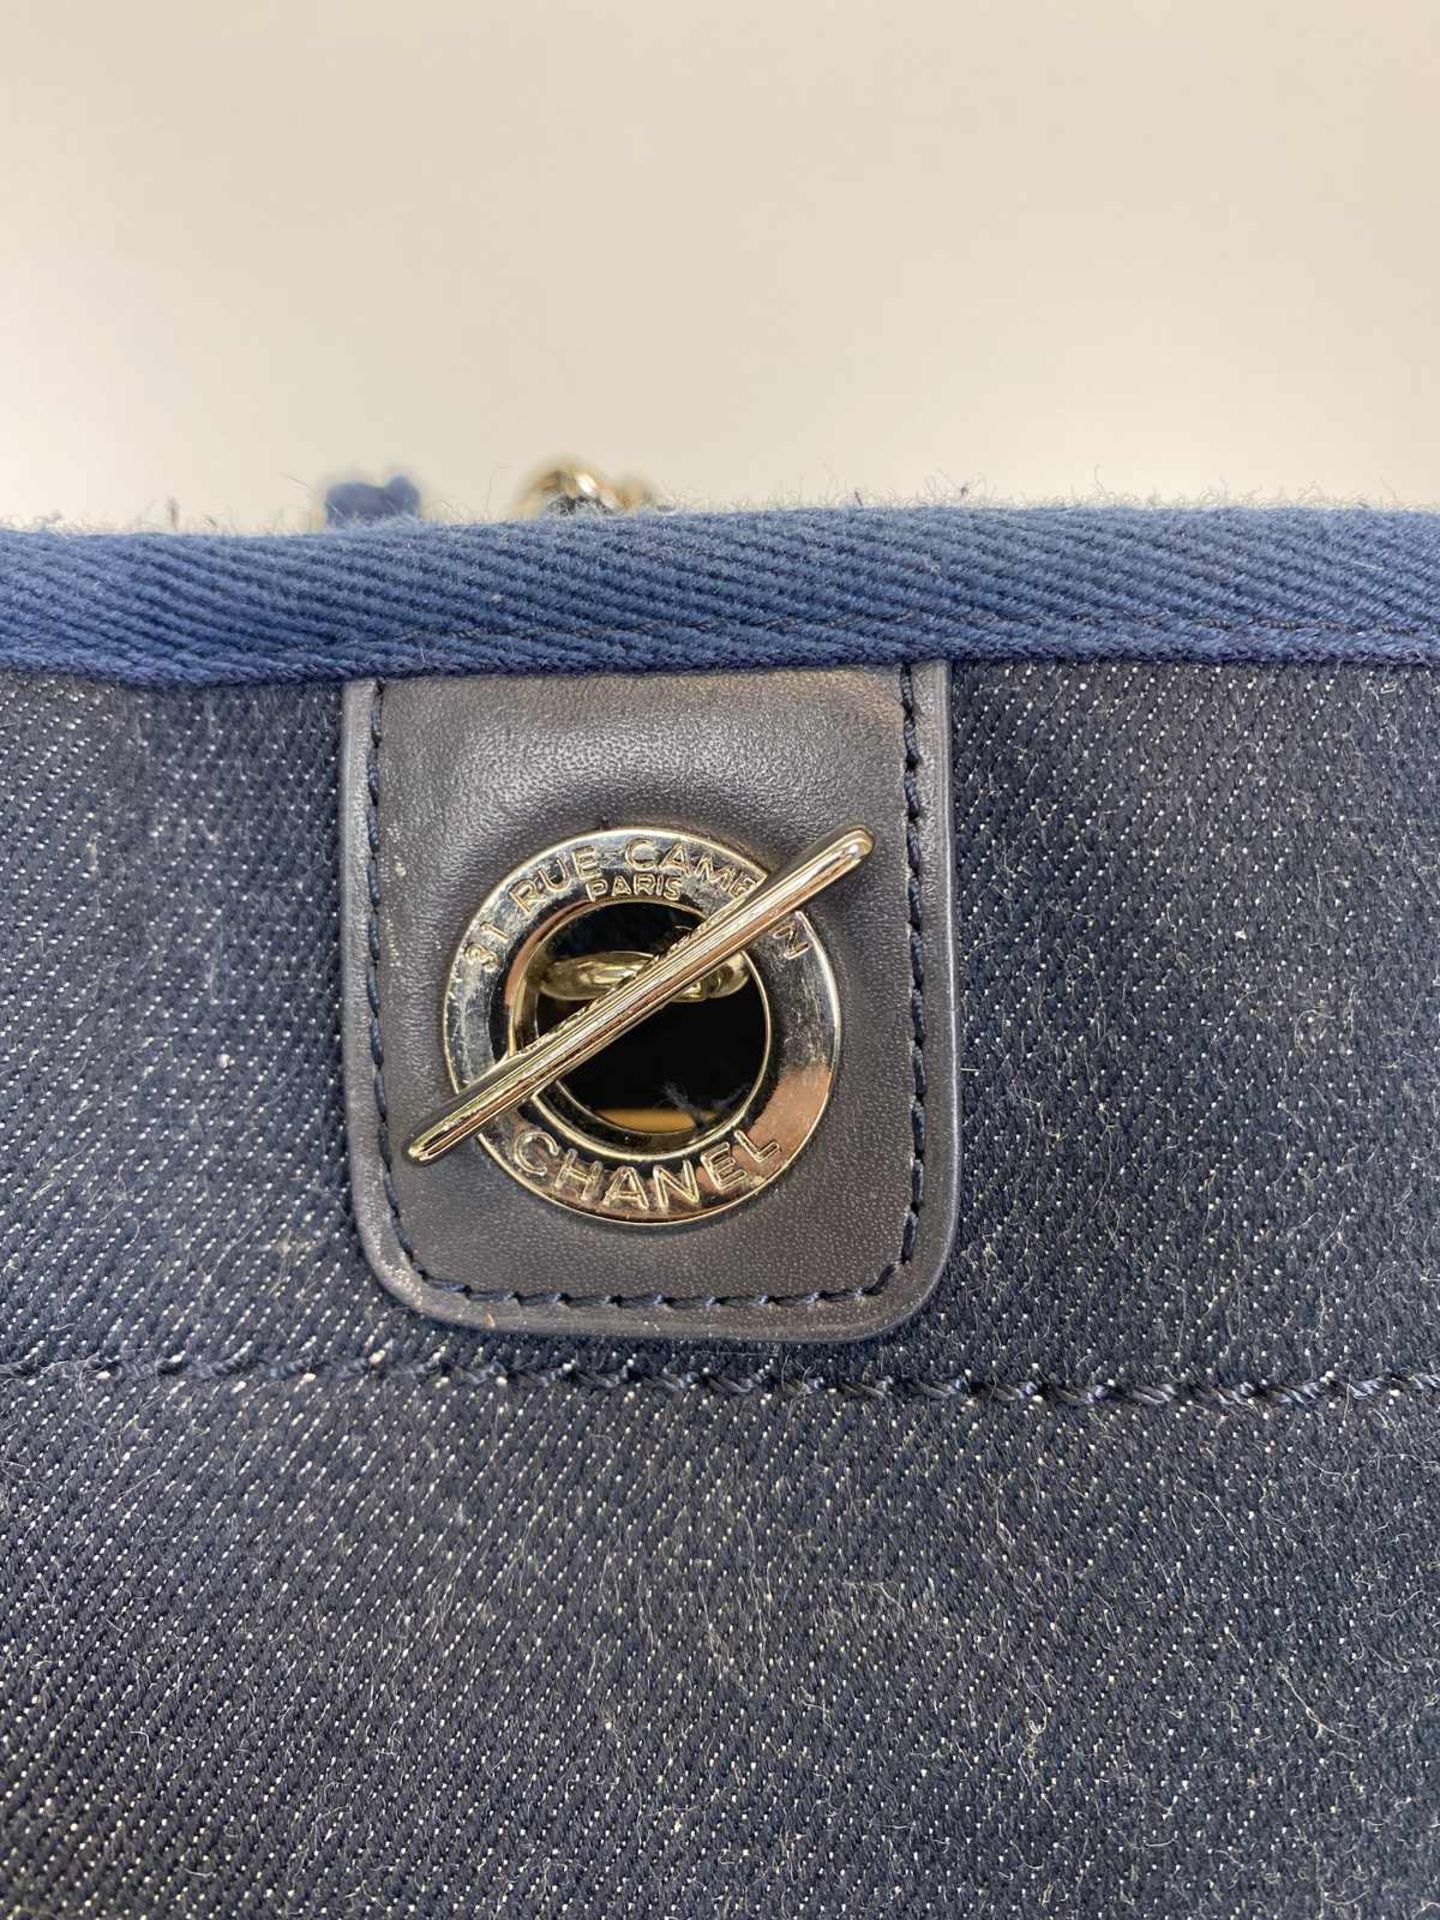 CHANEL Shopper Modell Deauville petit in Denim (Jeans) blau mit silberfarbener Hardware. Typische - Bild 3 aus 4